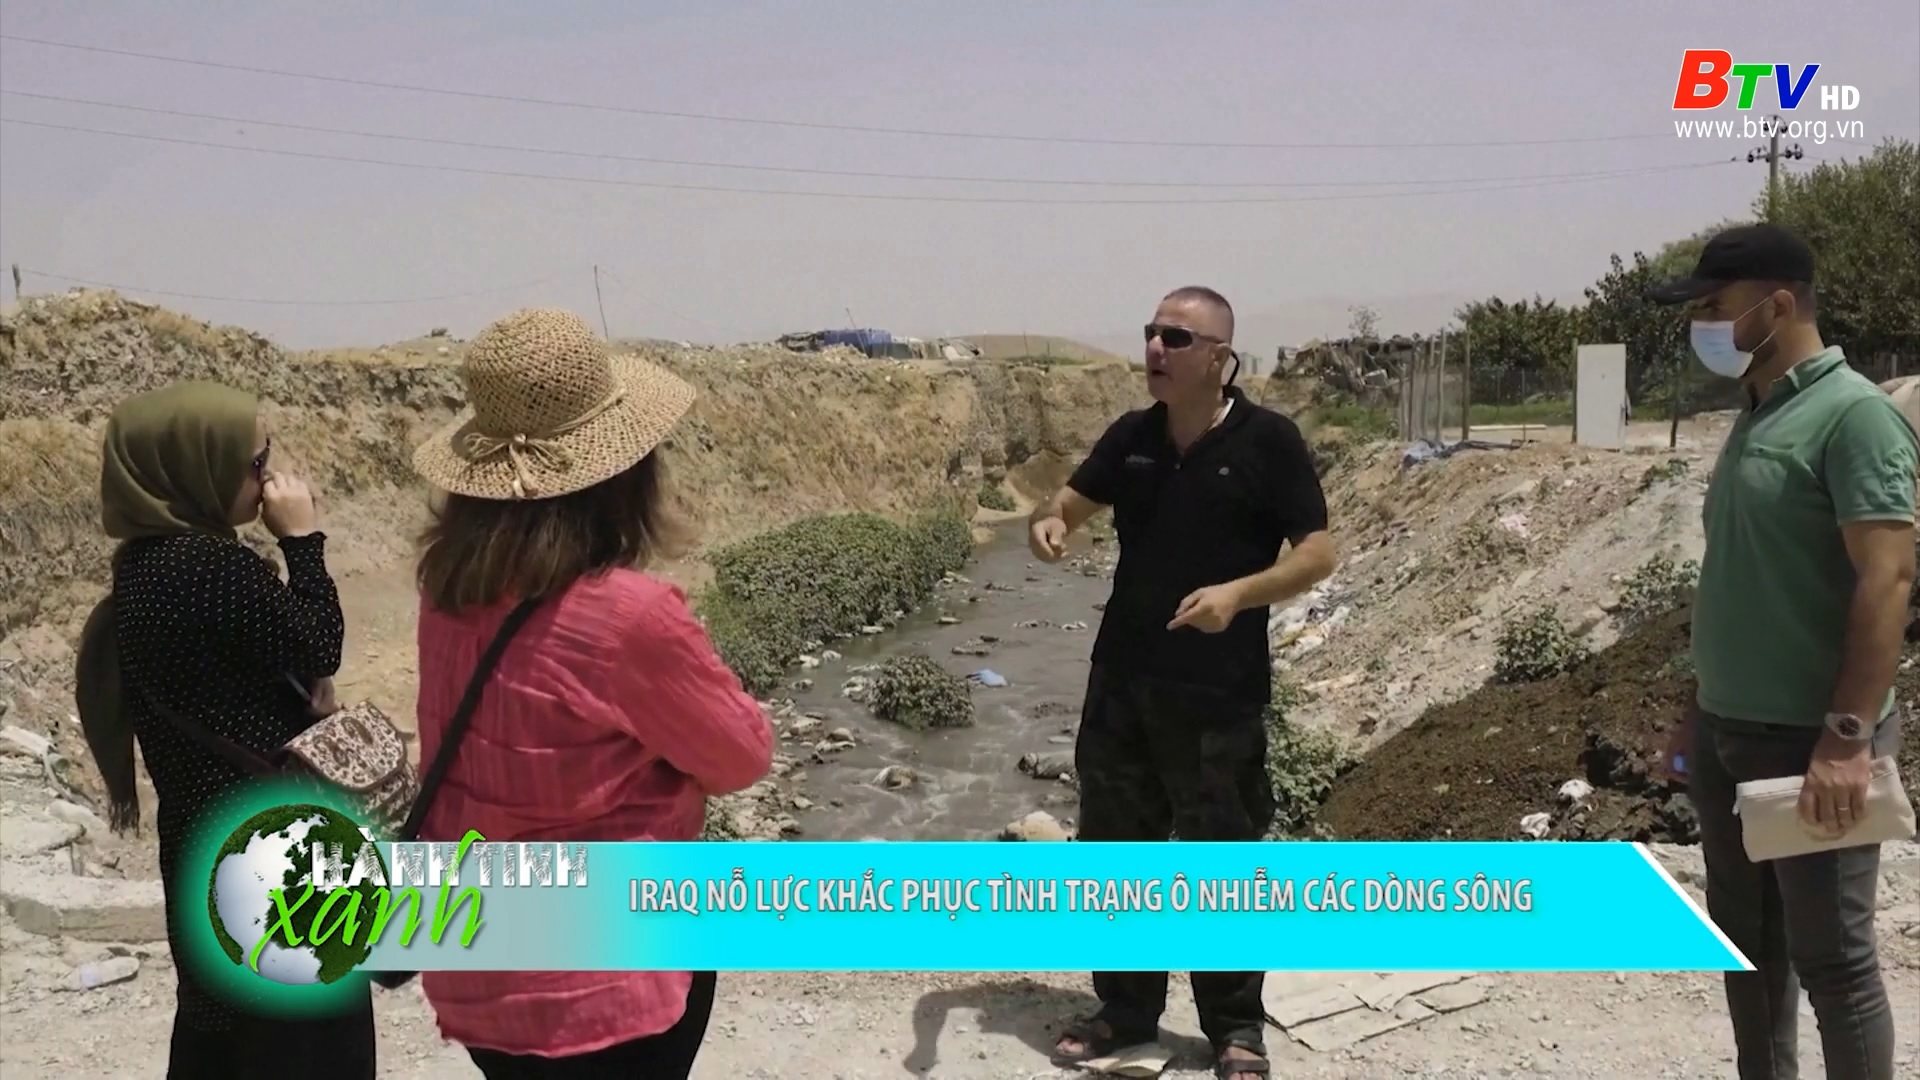 Iraq nỗ lực khắc phục tình trạng ô nhiễm các dòng sông